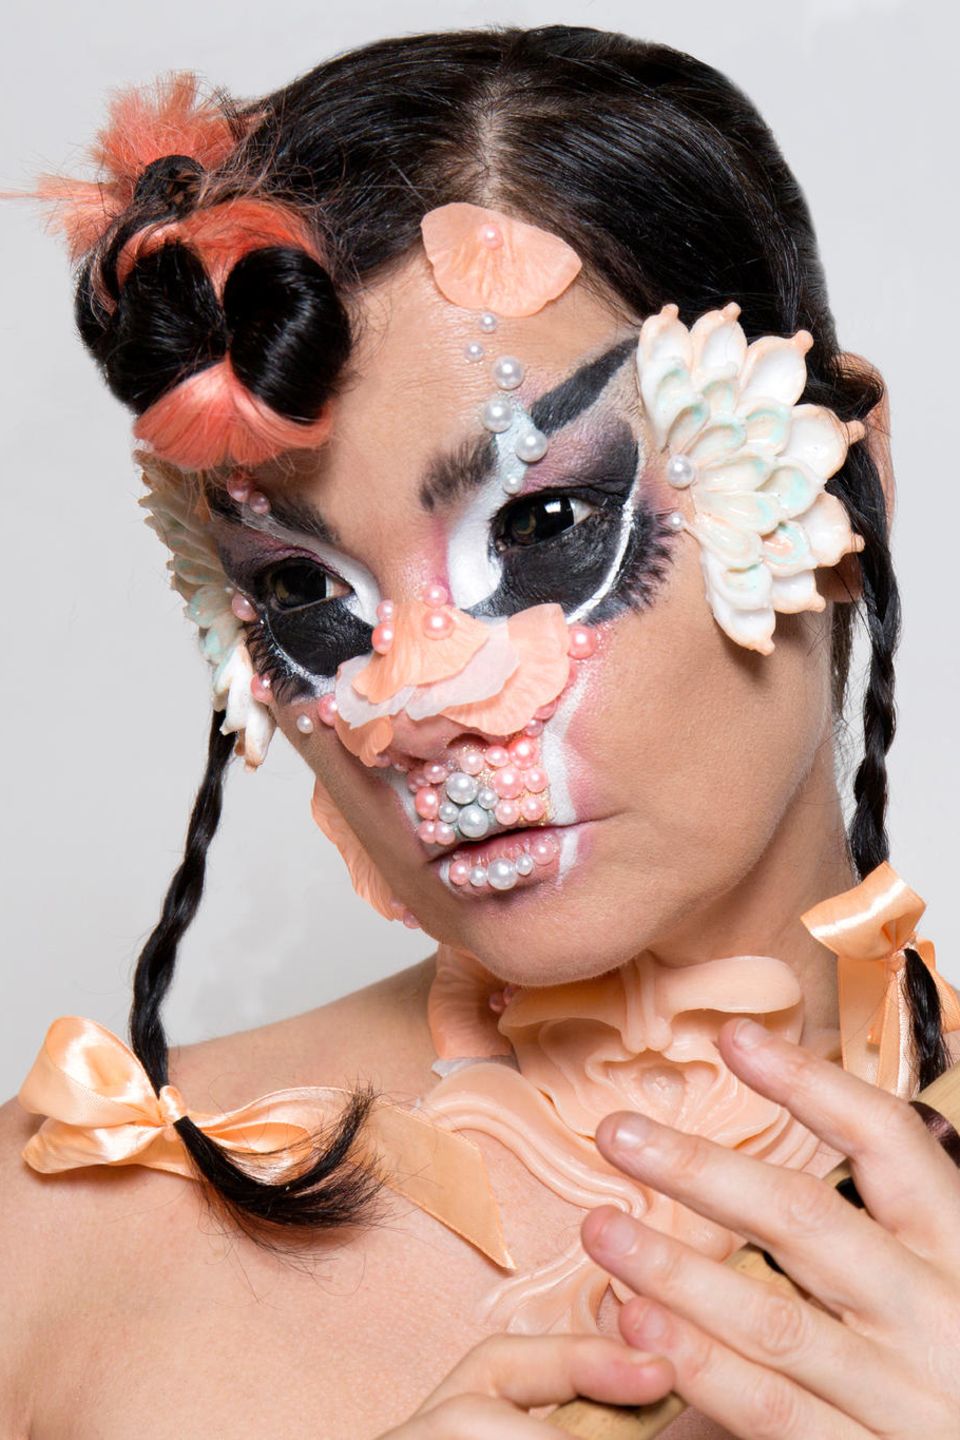 Internationale Stars wie Sängerin Björk gehören zum Line-up des "Primavera Sound" Barcelona